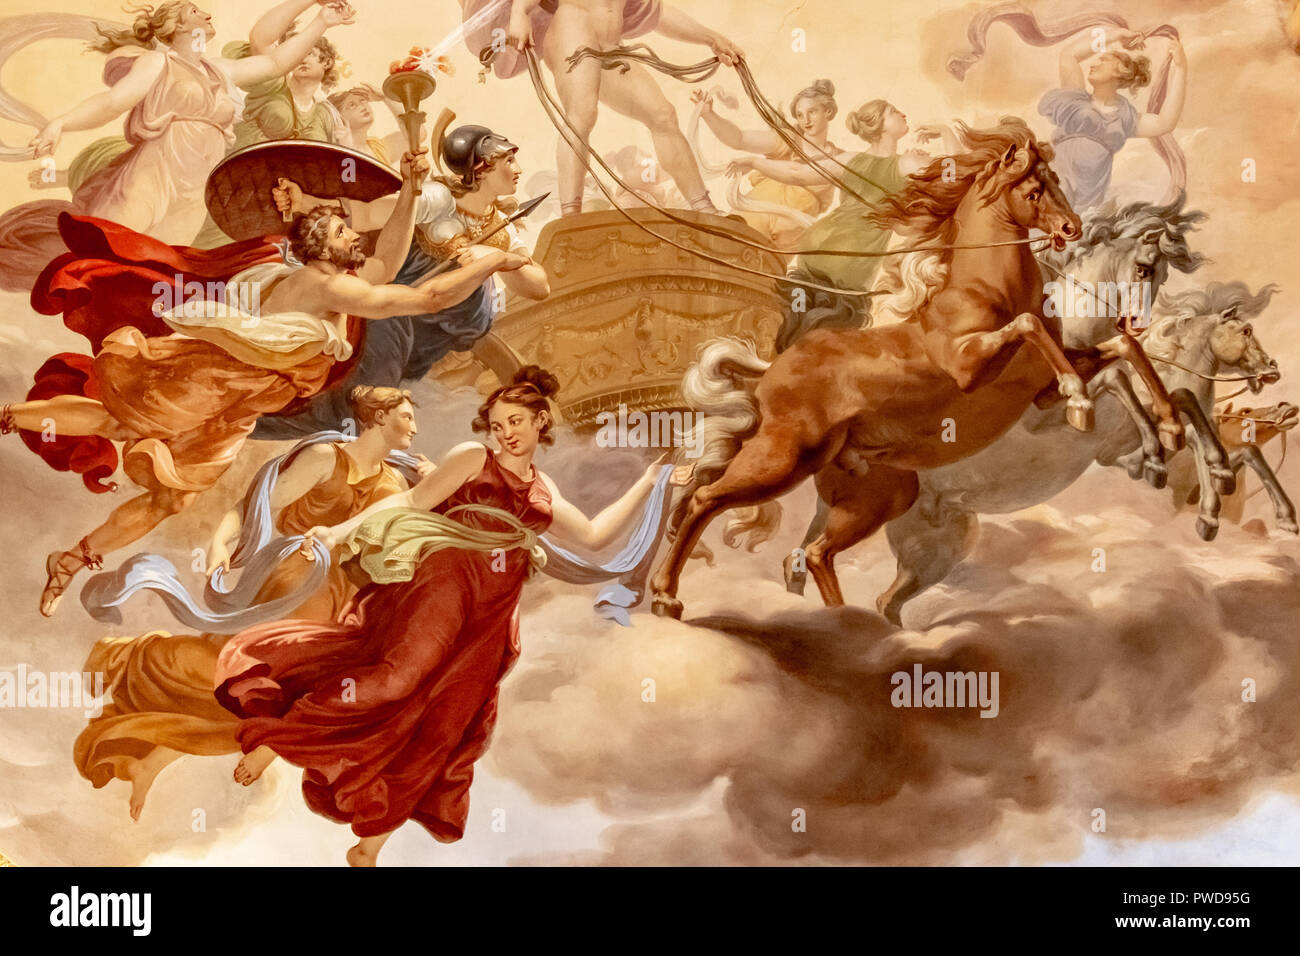 Les plafonds des Palais Pitti (Palais Pitti) sont ornés de belles peintures, fresques et richement décoré, et des sculptures. Banque D'Images